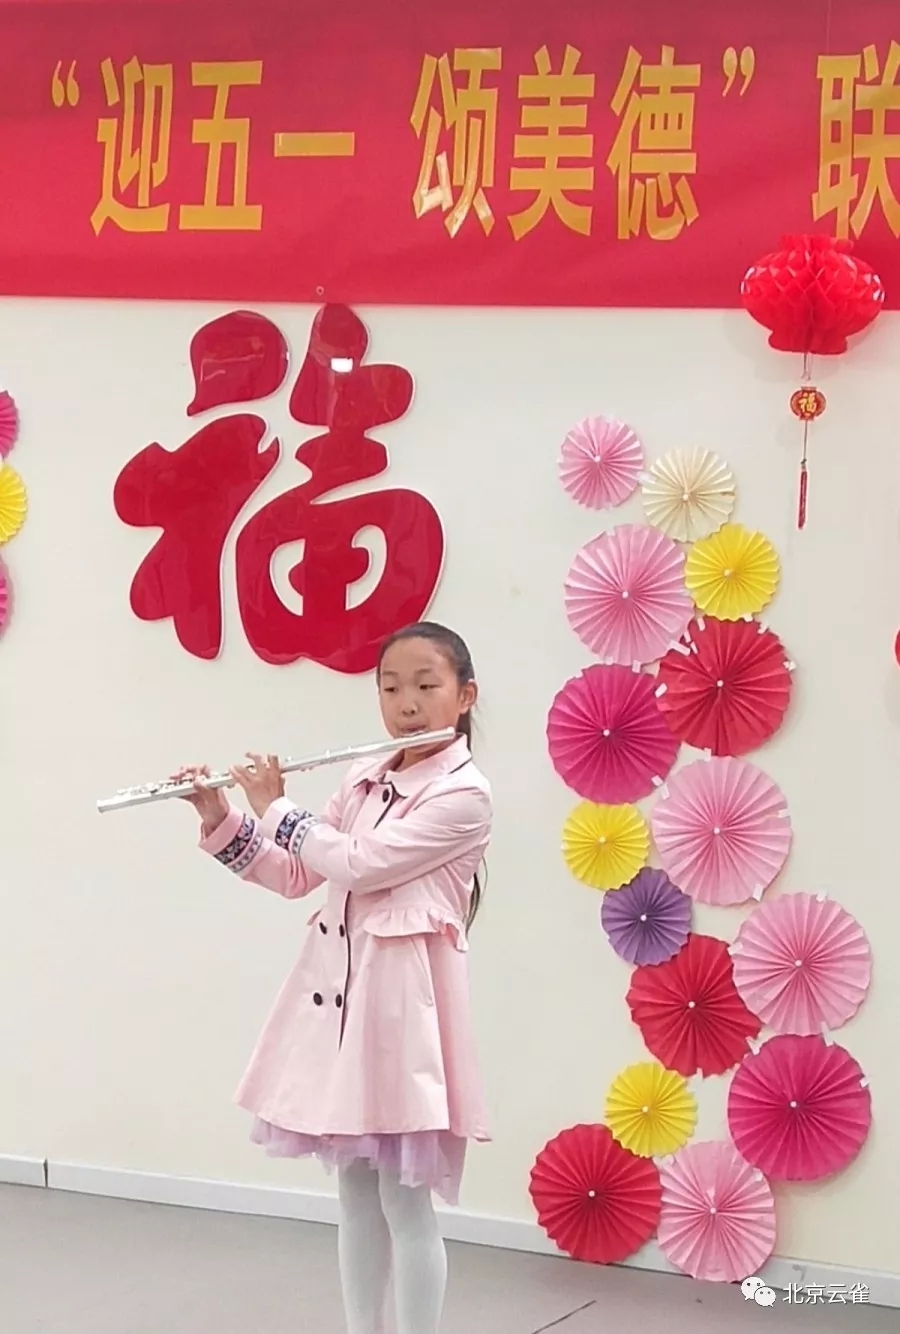 北京云雀“爱闪亮艺术团”-长笛独奏《凤凰序曲》、《歌声与微笑》